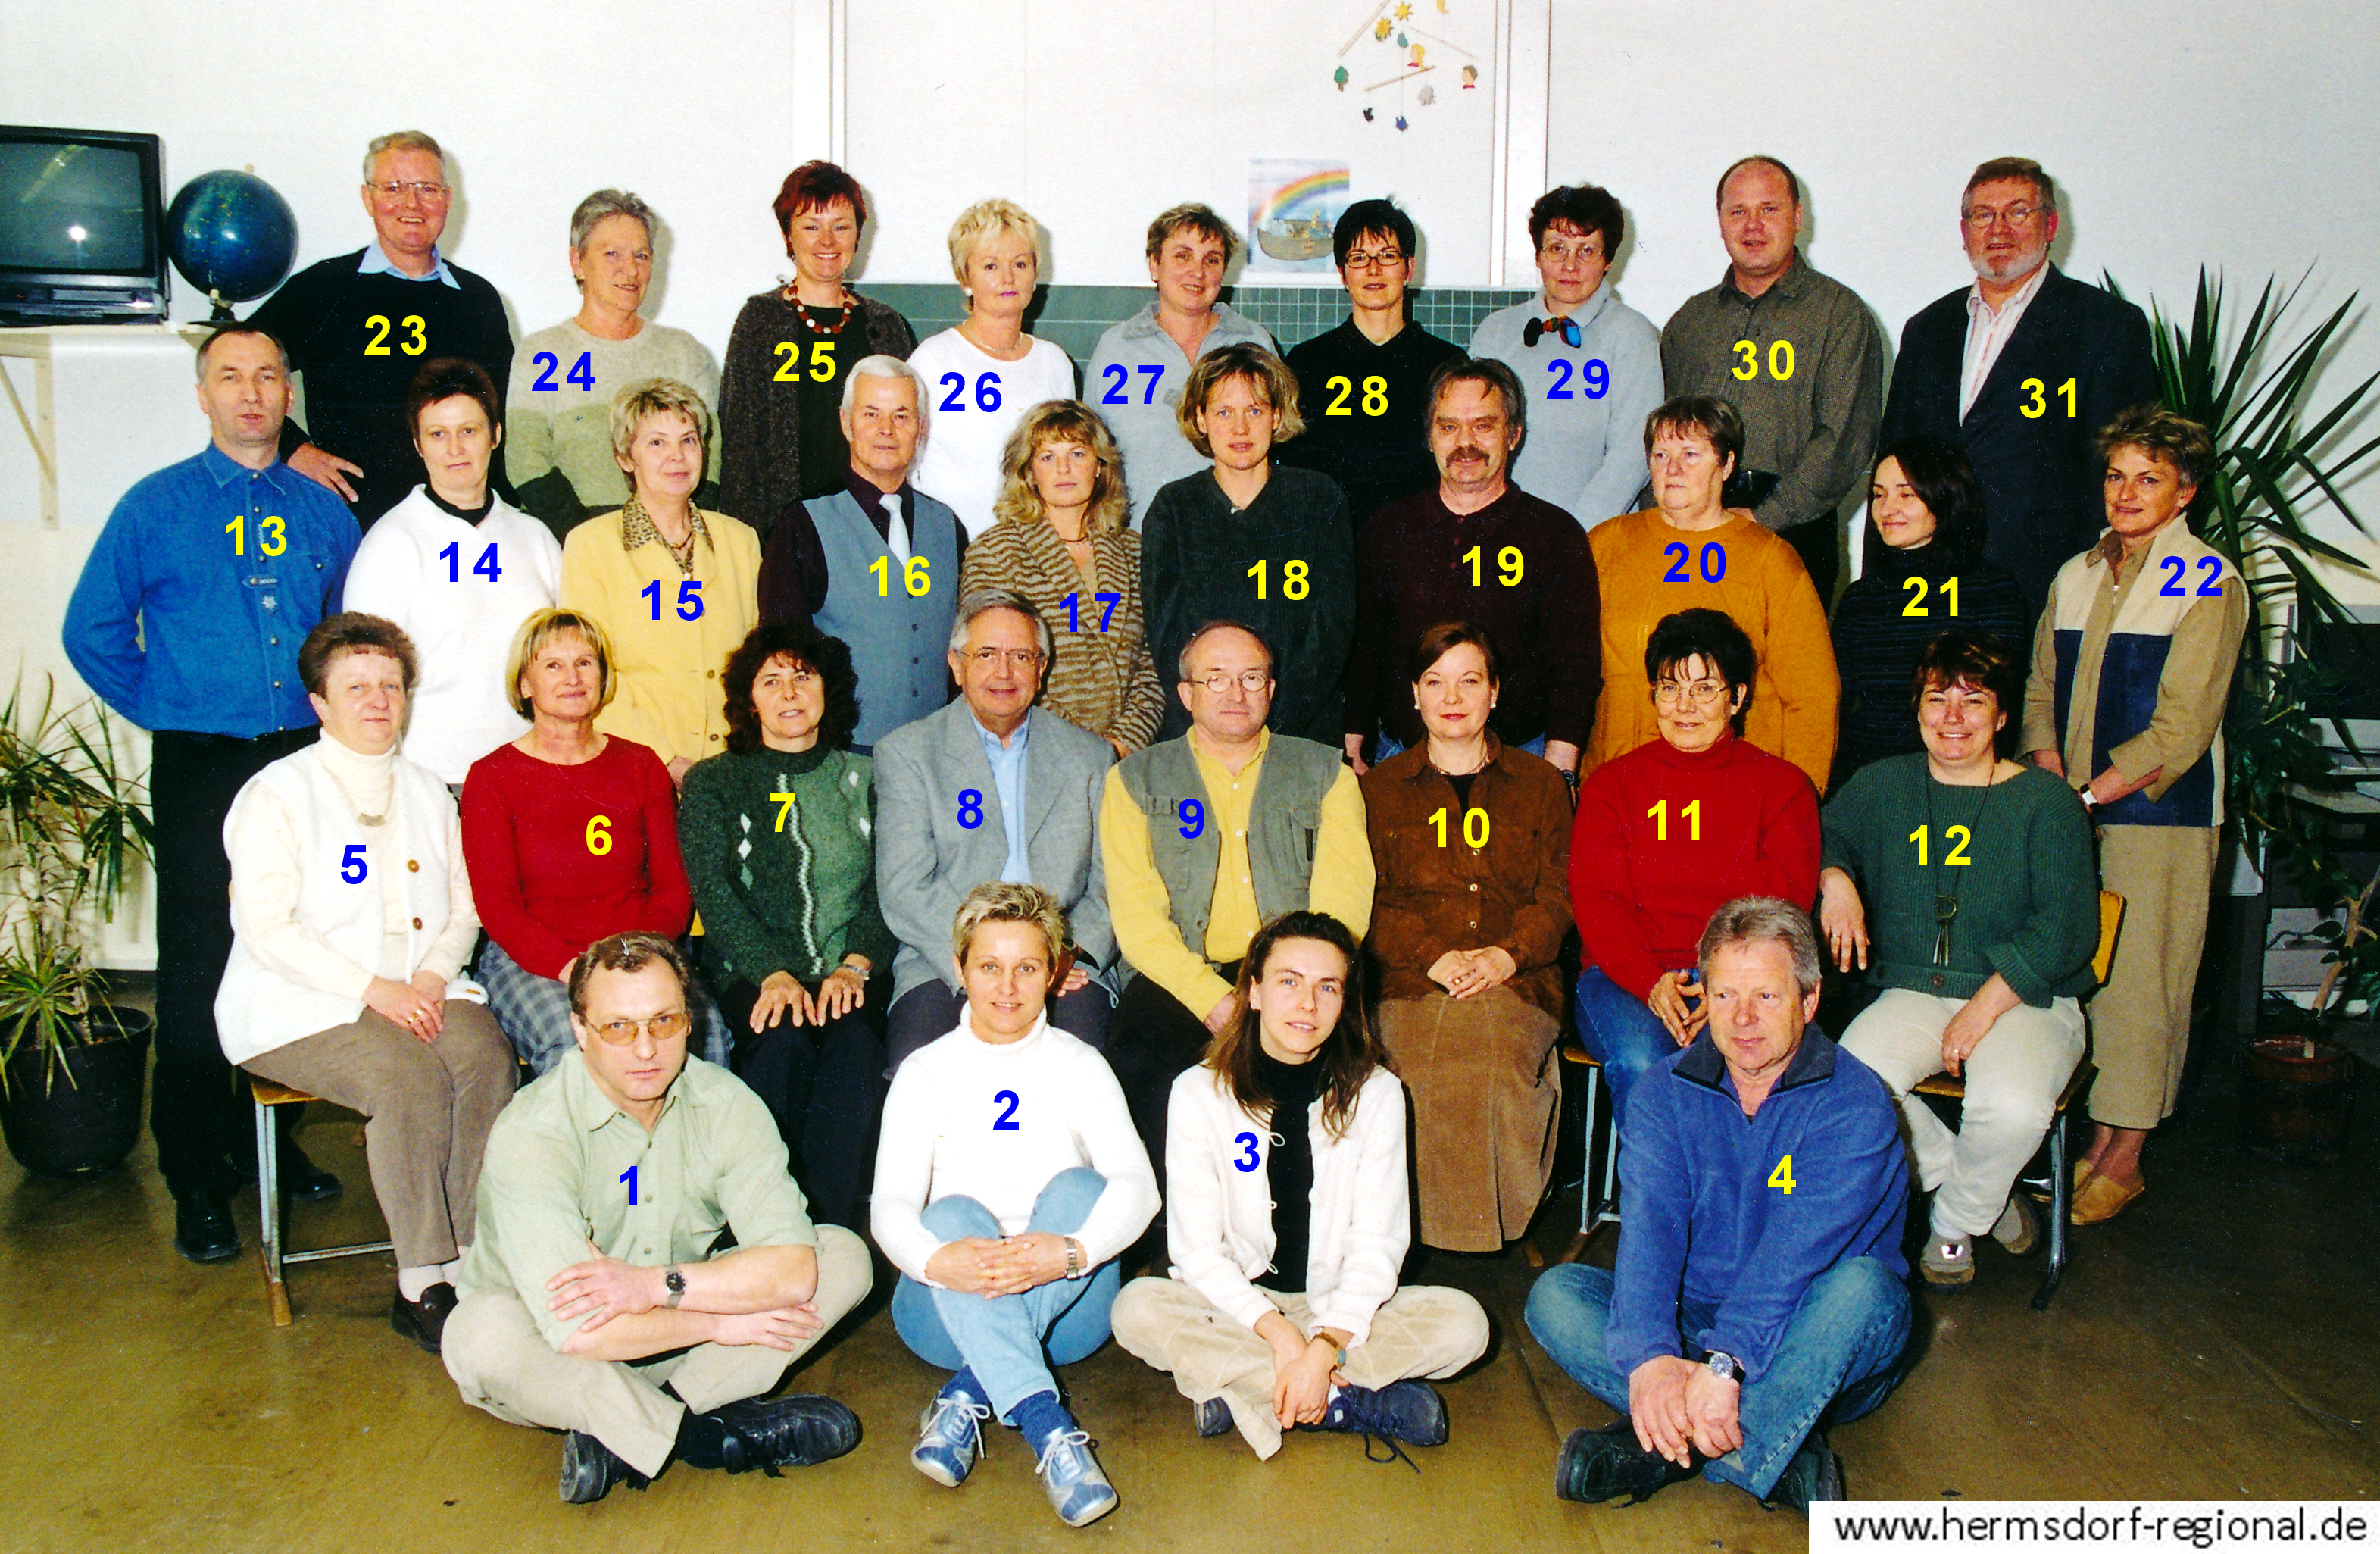 Das Kollegium der Regelschule Hermsdorf im Frühjahr 2003 